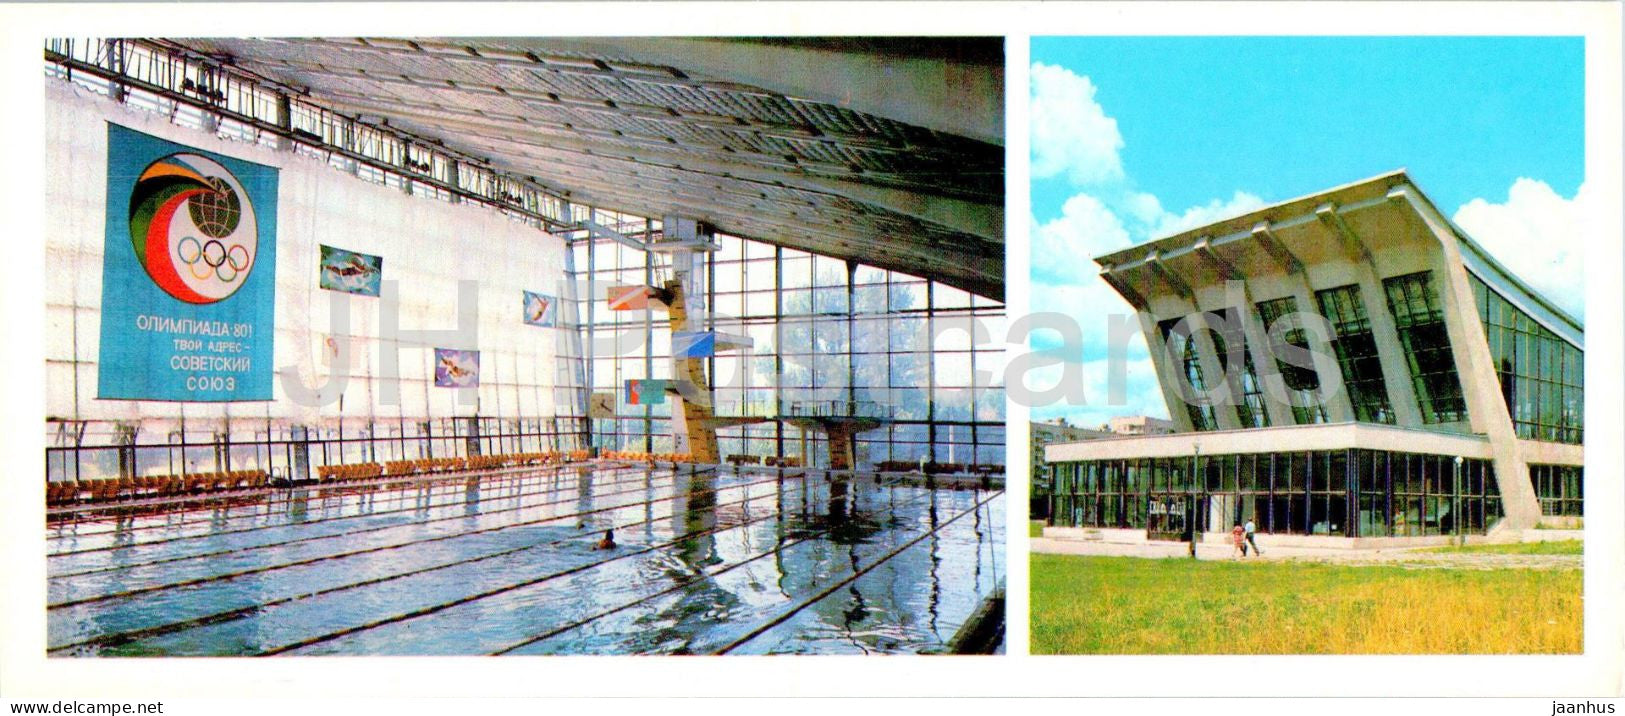 Kharkiv - Pioner swimming pool - 1981 - Ukraine USSR - unused - JH Postcards